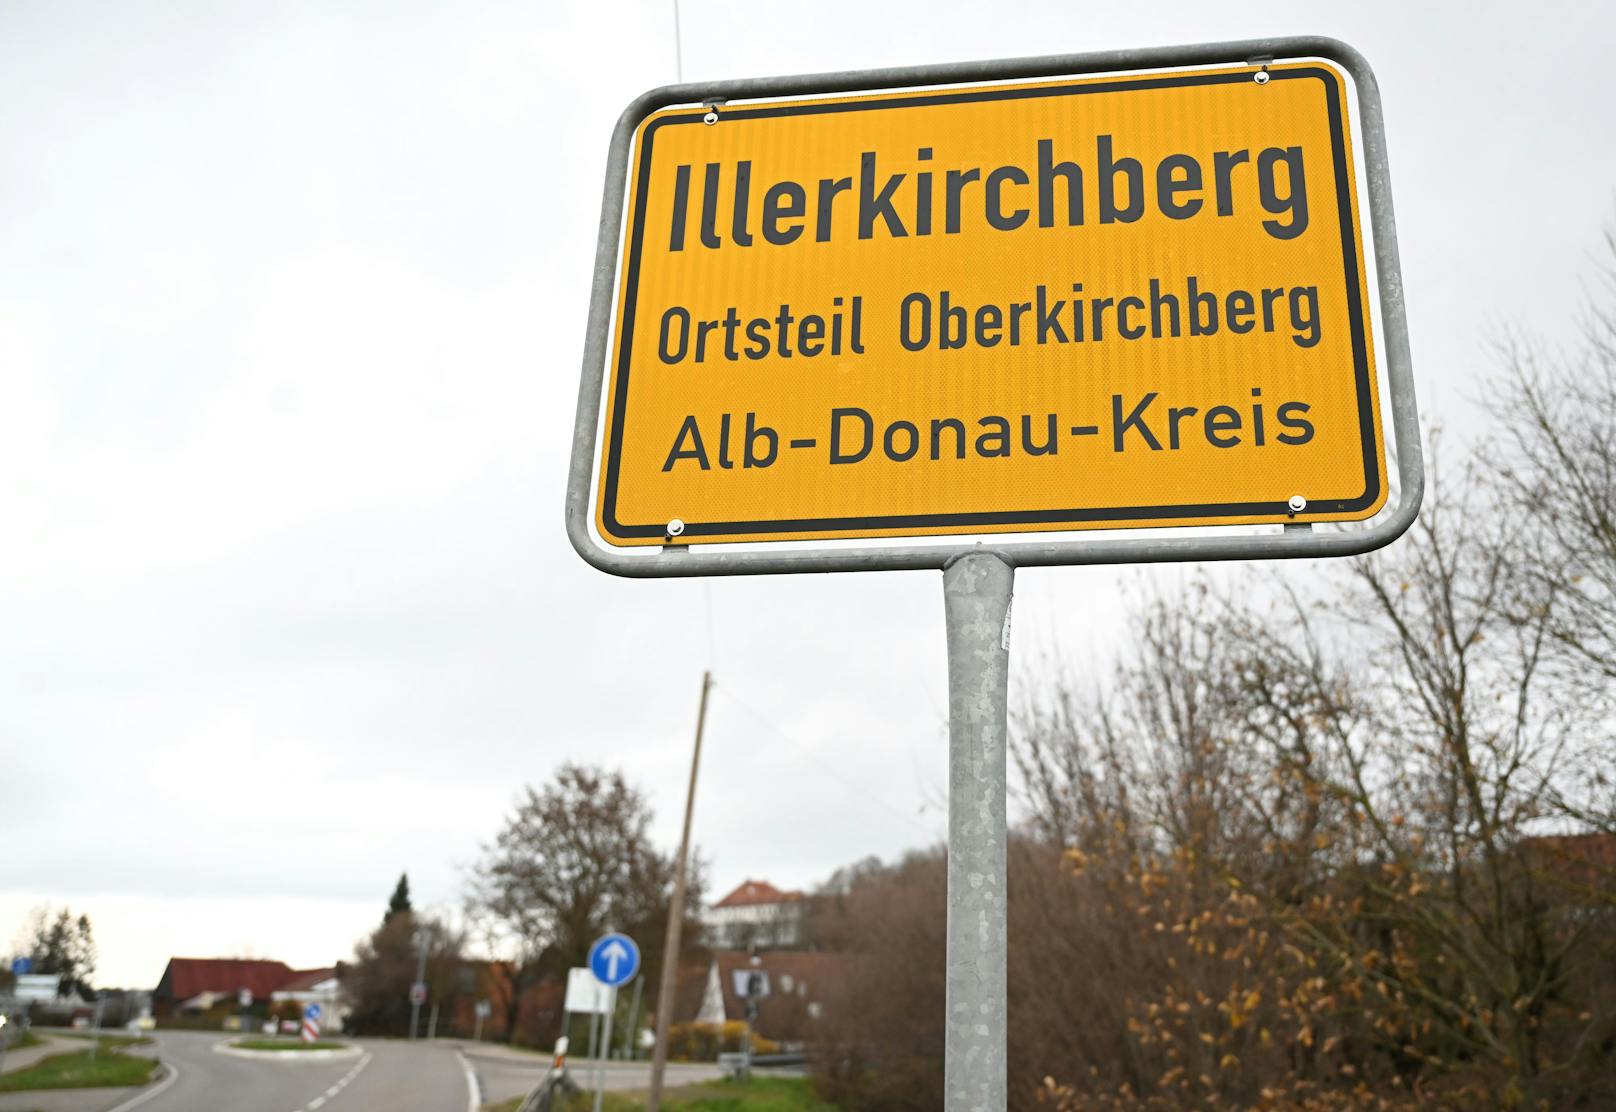 Das Ortszeichen des Oberkichberger Ortsteils Illerkirchberg.